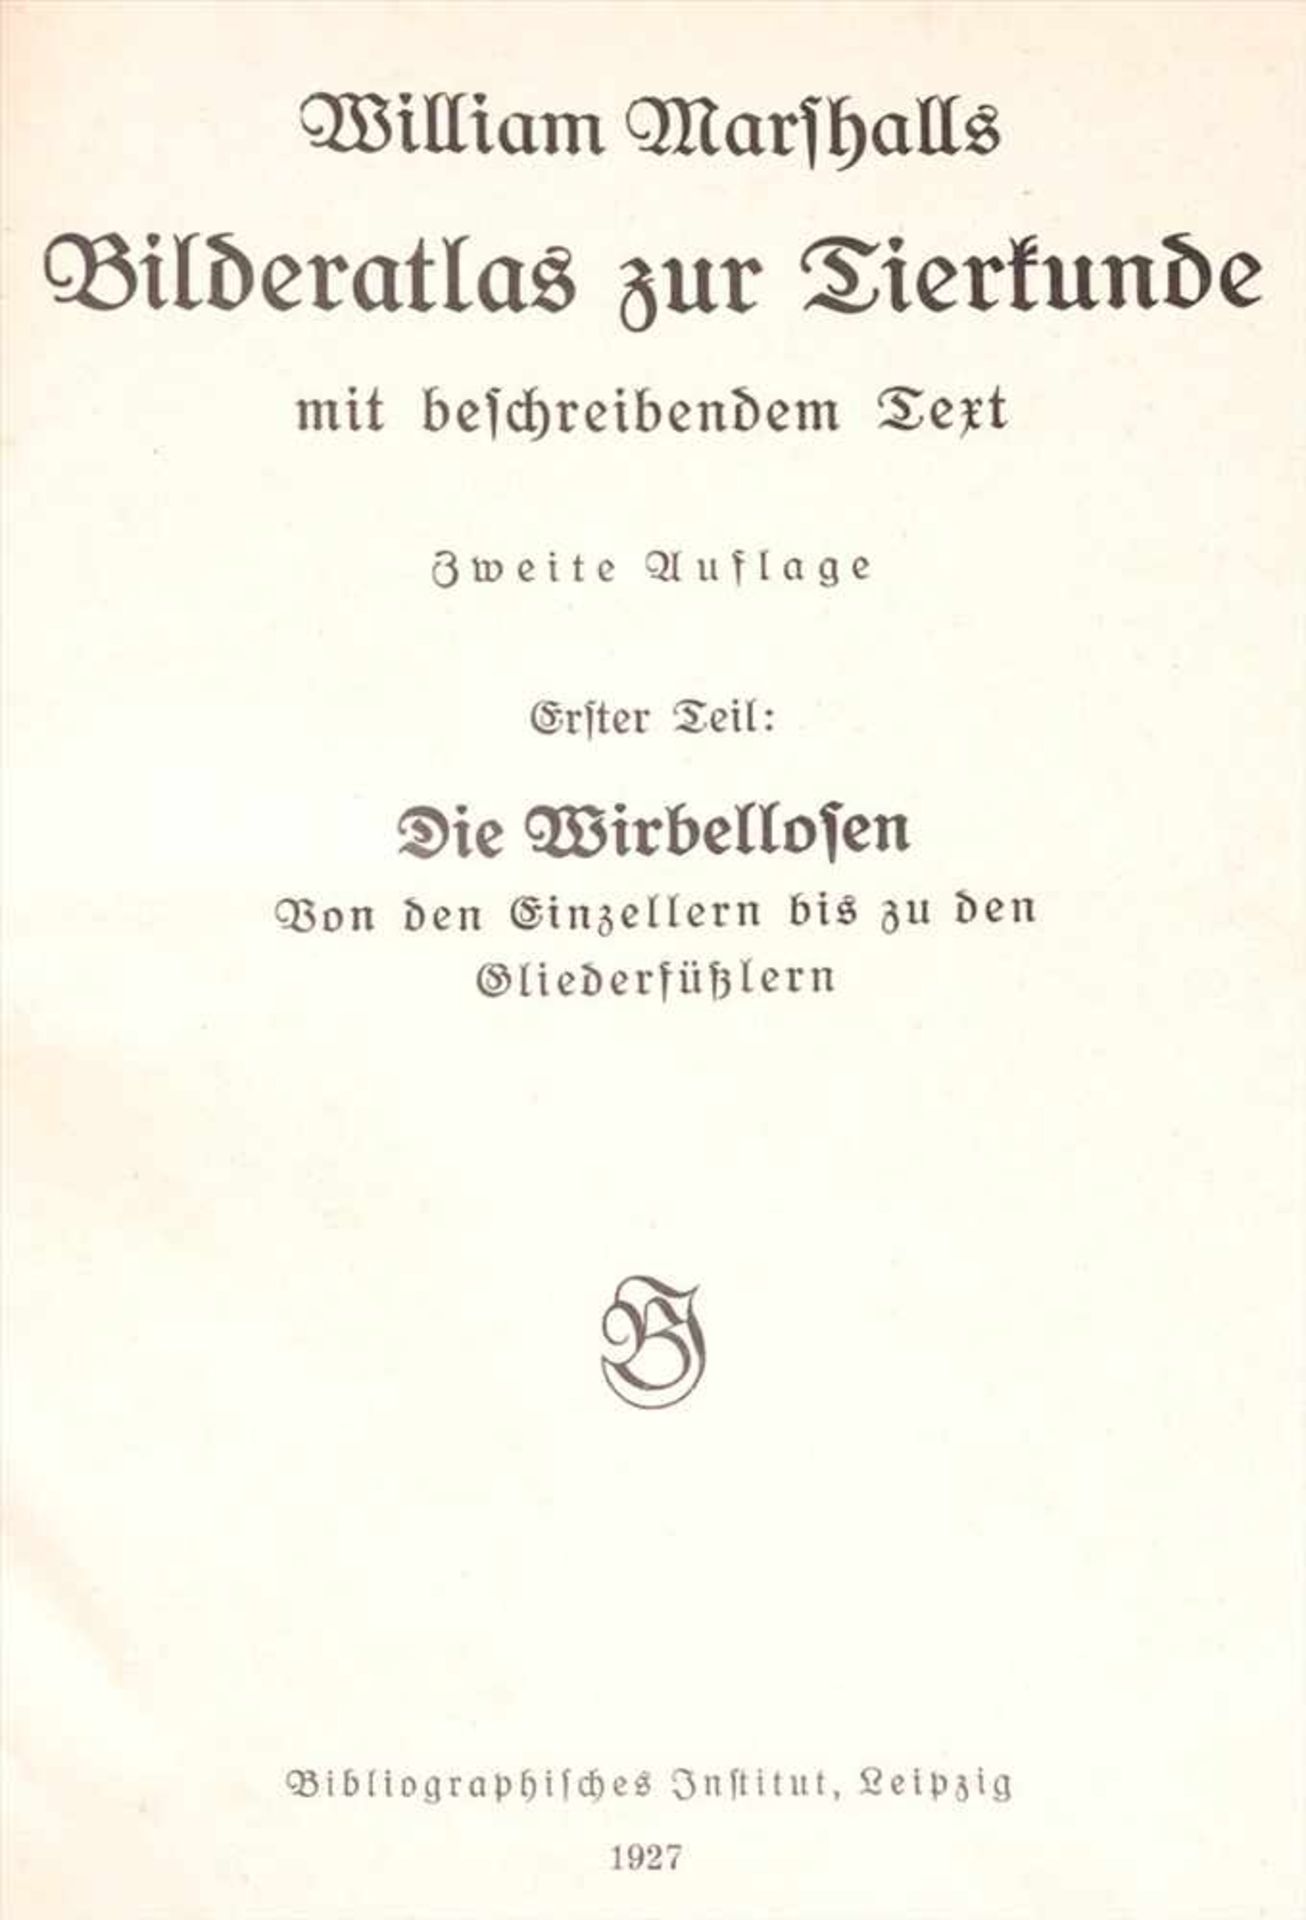 Marshall, William: Bilderatlas zur TierkundeZweite Auflage, Bibliographisches Institut, Leipzig, - Bild 4 aus 4